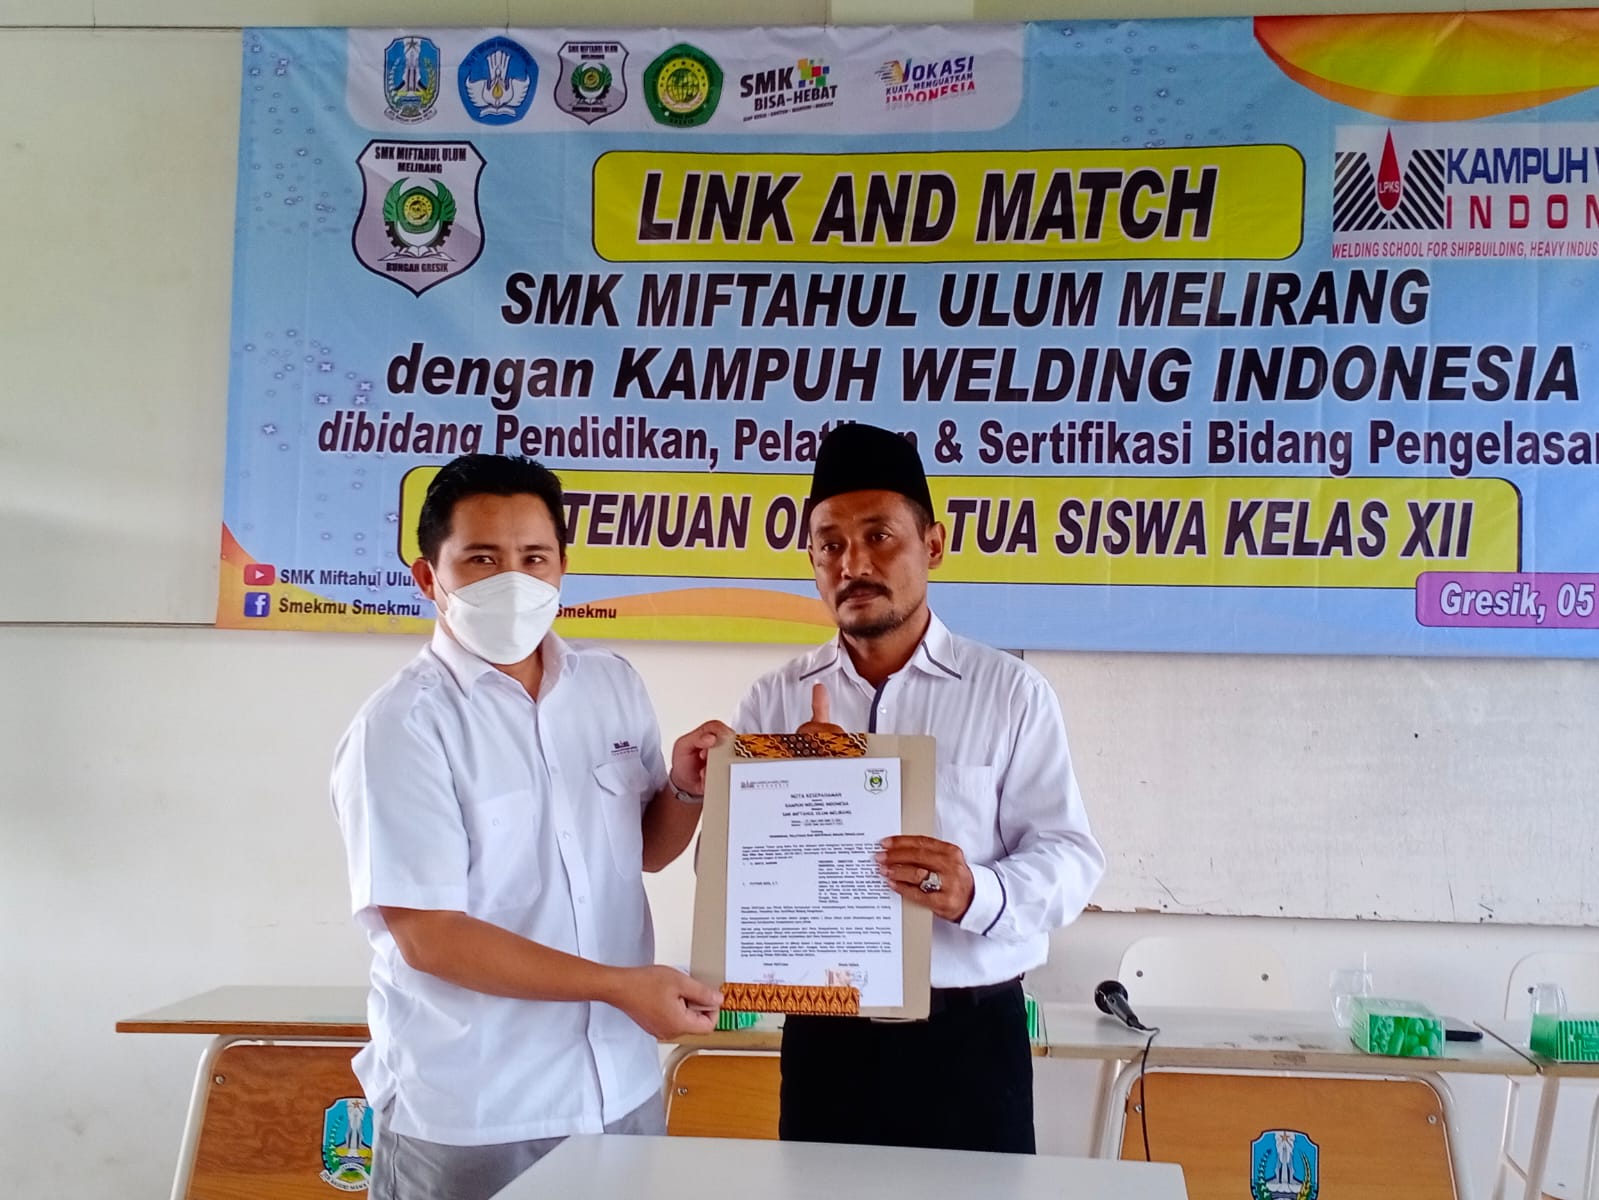 Gandeng Kampuh Welding Indonesia, Smekmu Gresik Cetak Lulusan Bersertifikat Welder